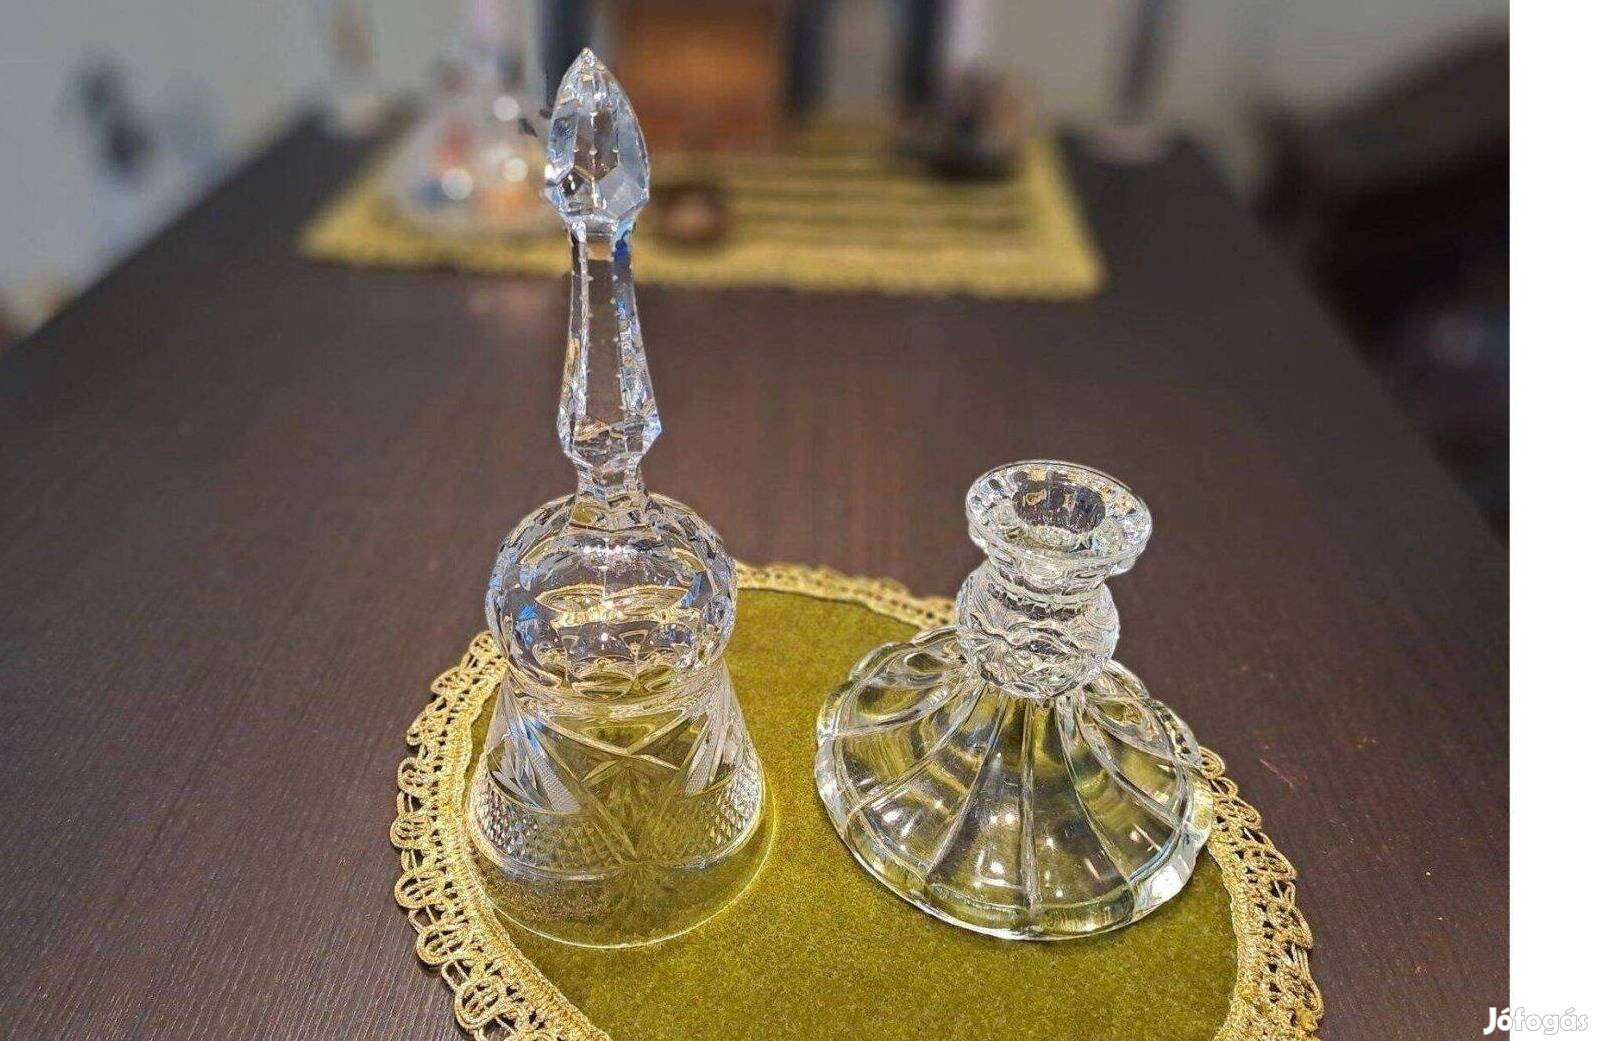 Kristály és üveg tárgyak